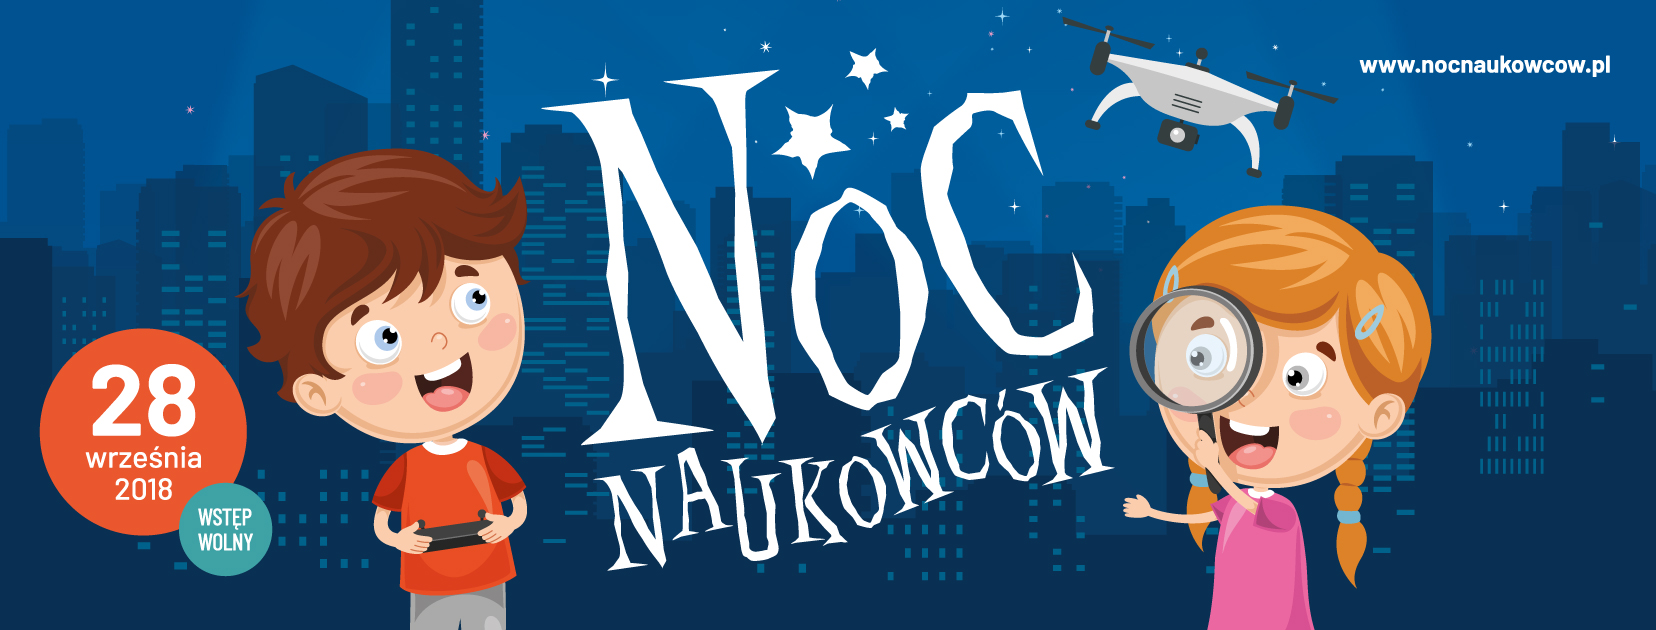 Logo Noc Naukowcw 2018